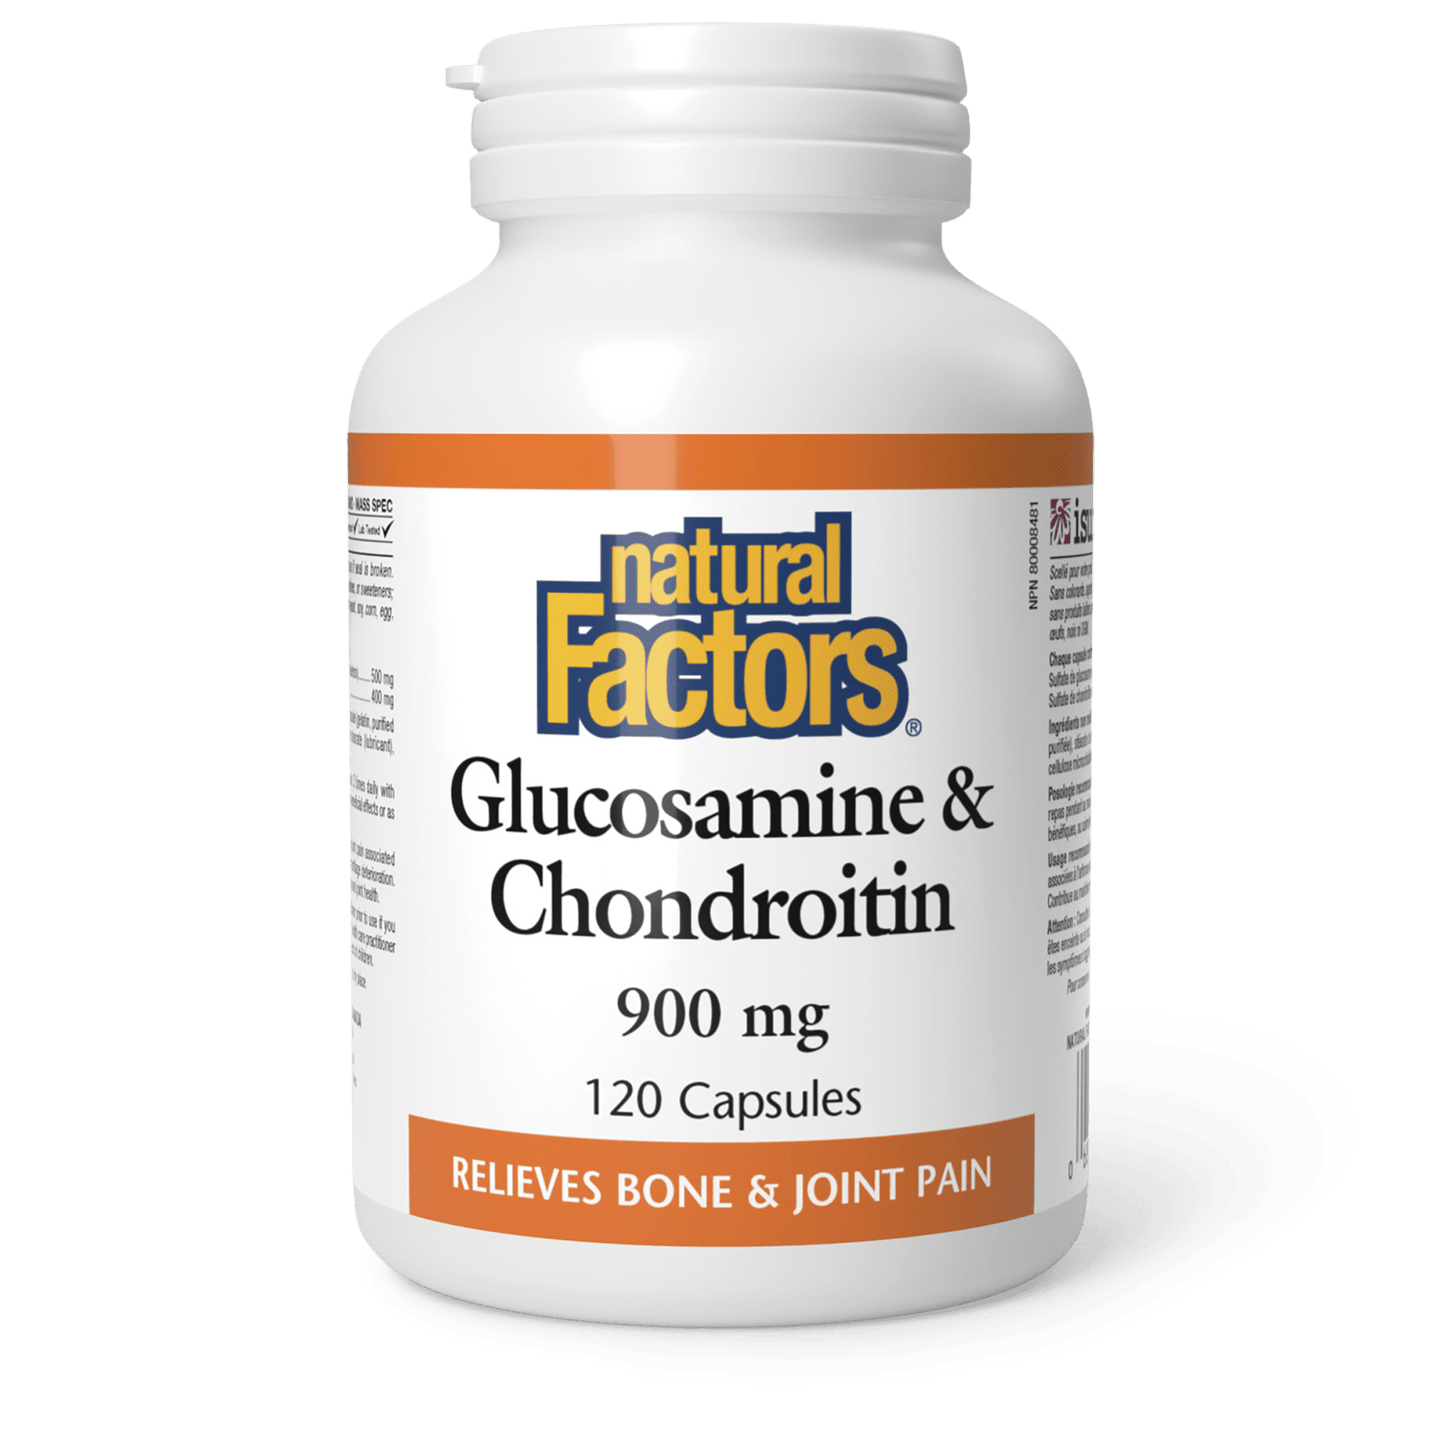 Glucosamine & Chondroitin 900 mg, Natural Factors|v|image|2687